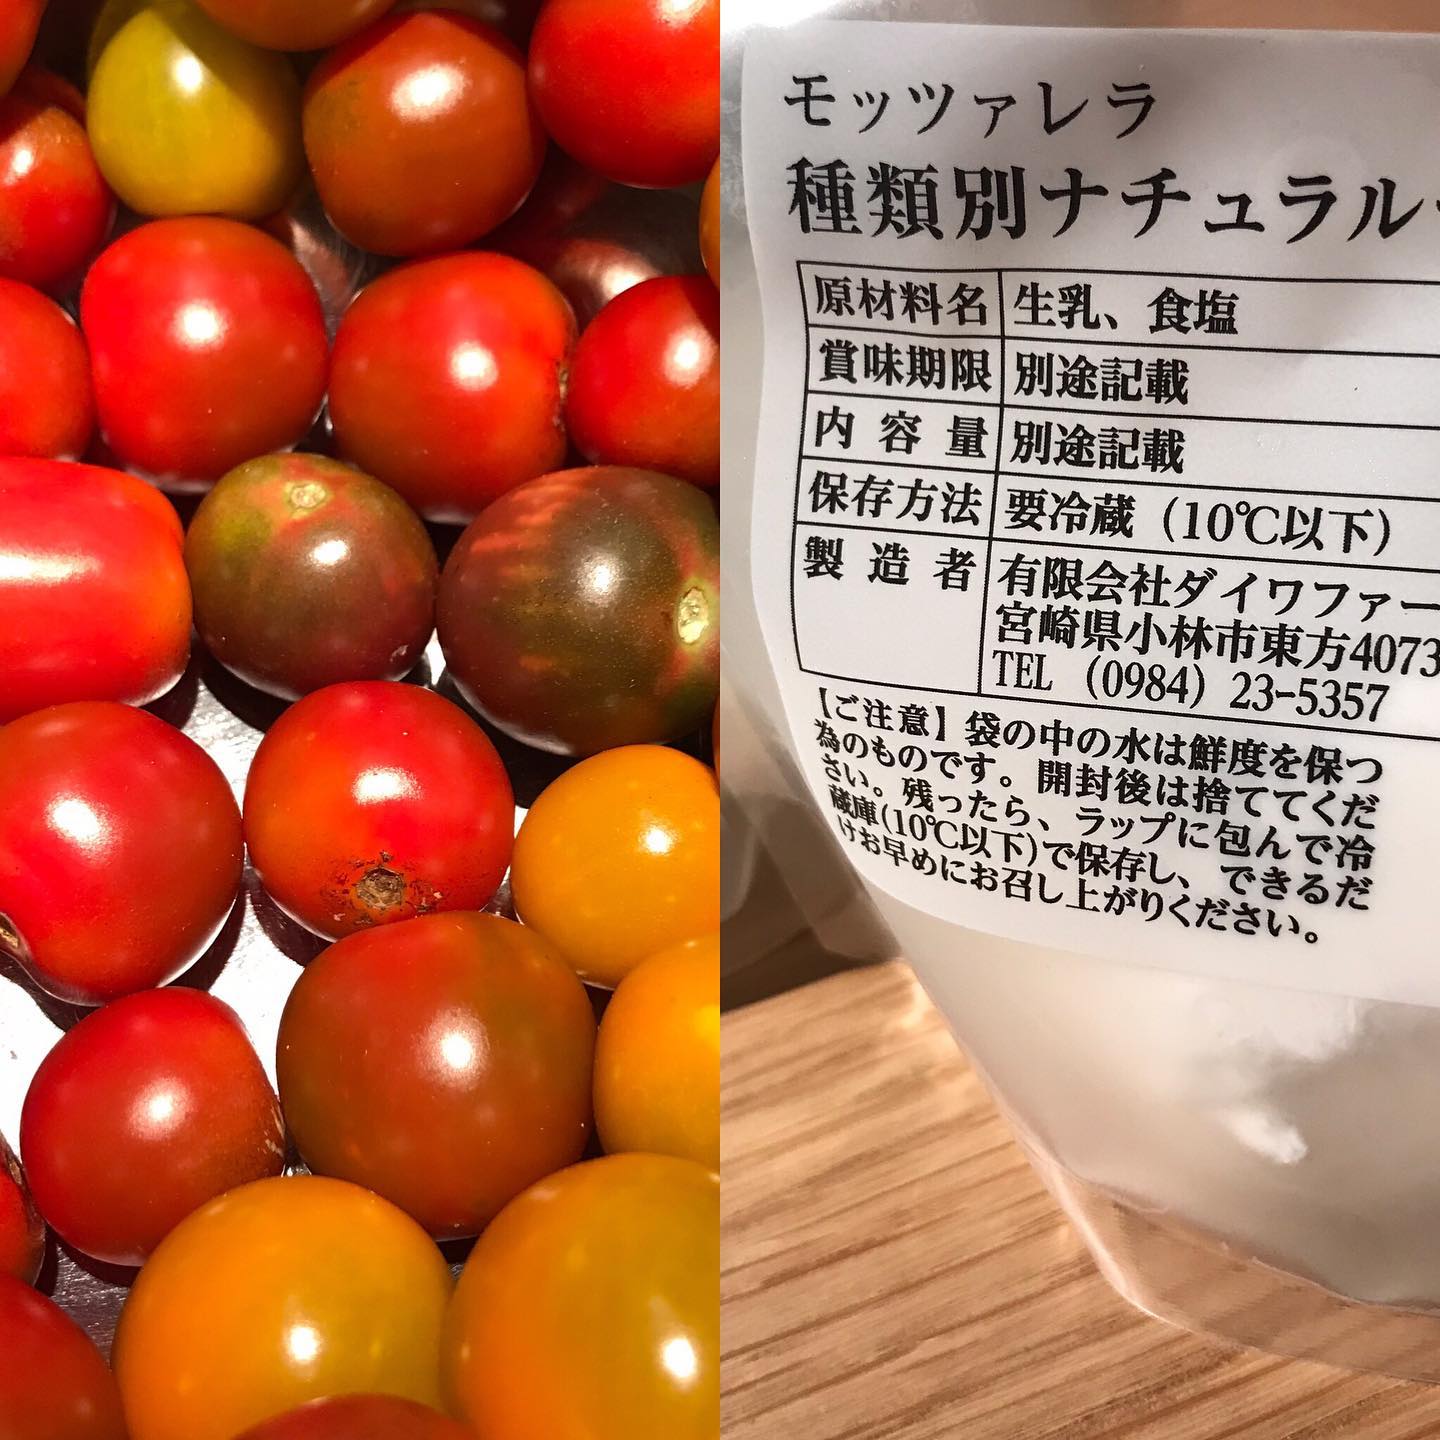 先日収穫したトマトがいい感じです！ダイワファームさん(宮崎)のモッツァレラと、同じく宮崎出身のS谷シェフ(Aクアミネラーレ)からいただいたバジルと合わせまーす！#イルフェソワフ #ワイン#日本酒 #薬院#警固